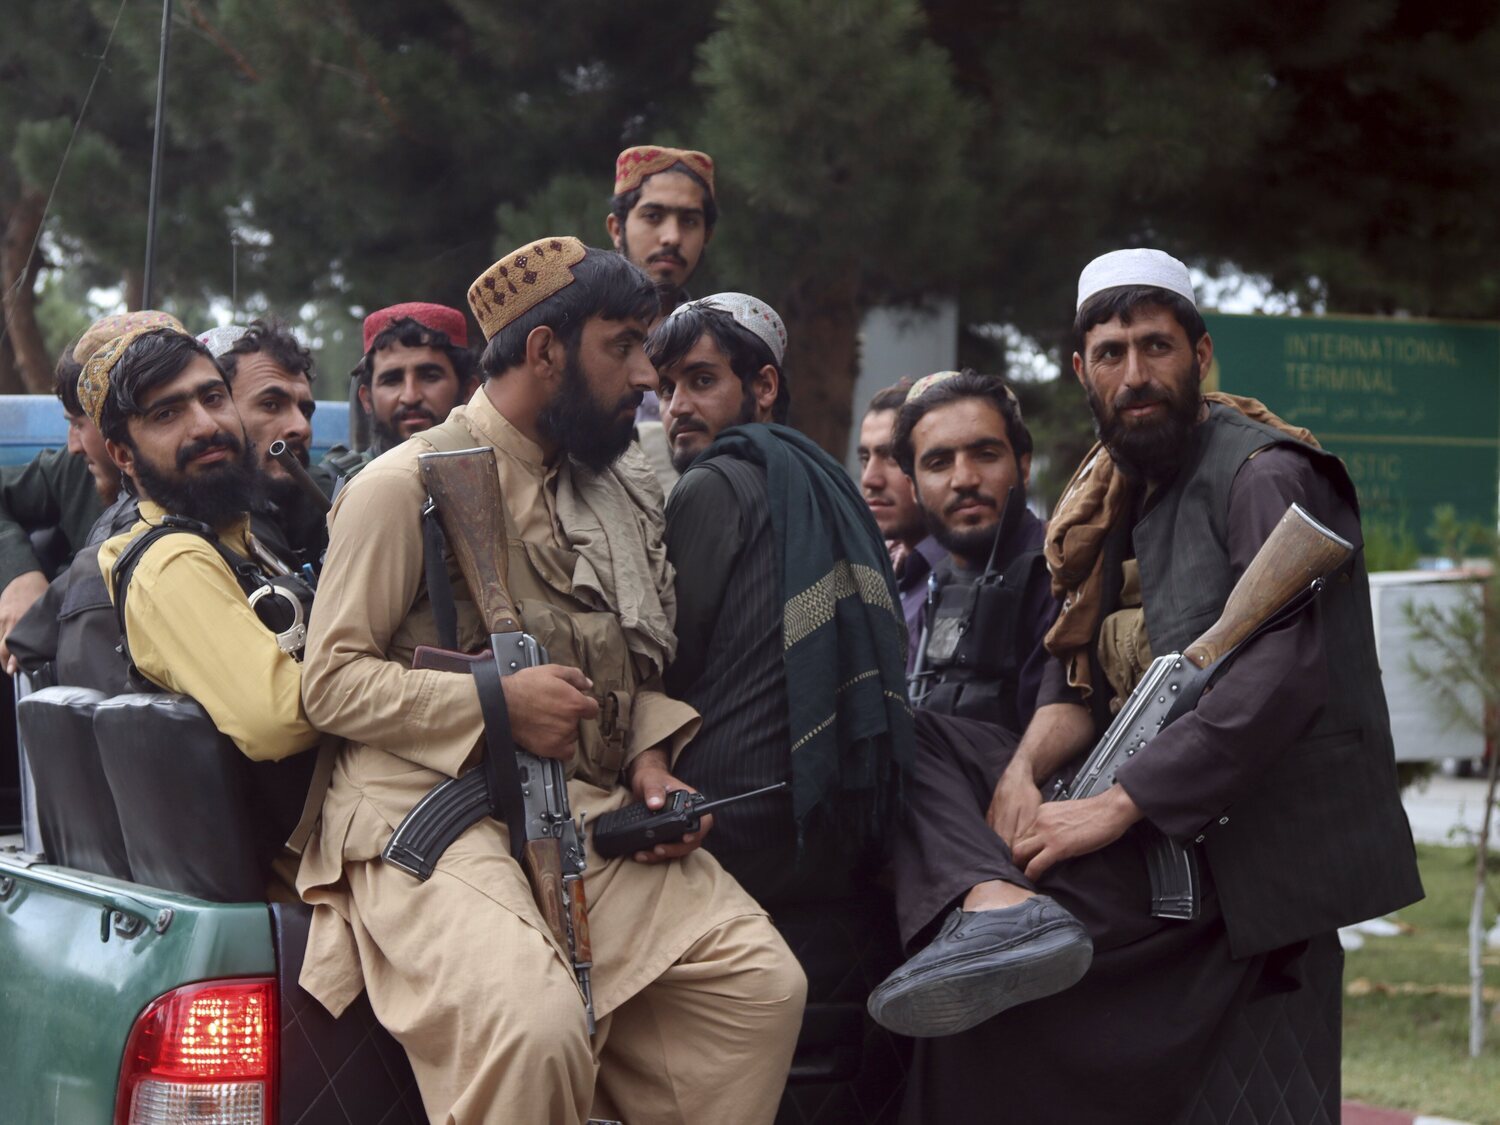 La emboscada a un homosexual en Afganistán por parte de los talibanes: prometieron ayudarlo, pero lo golpearon y violaron